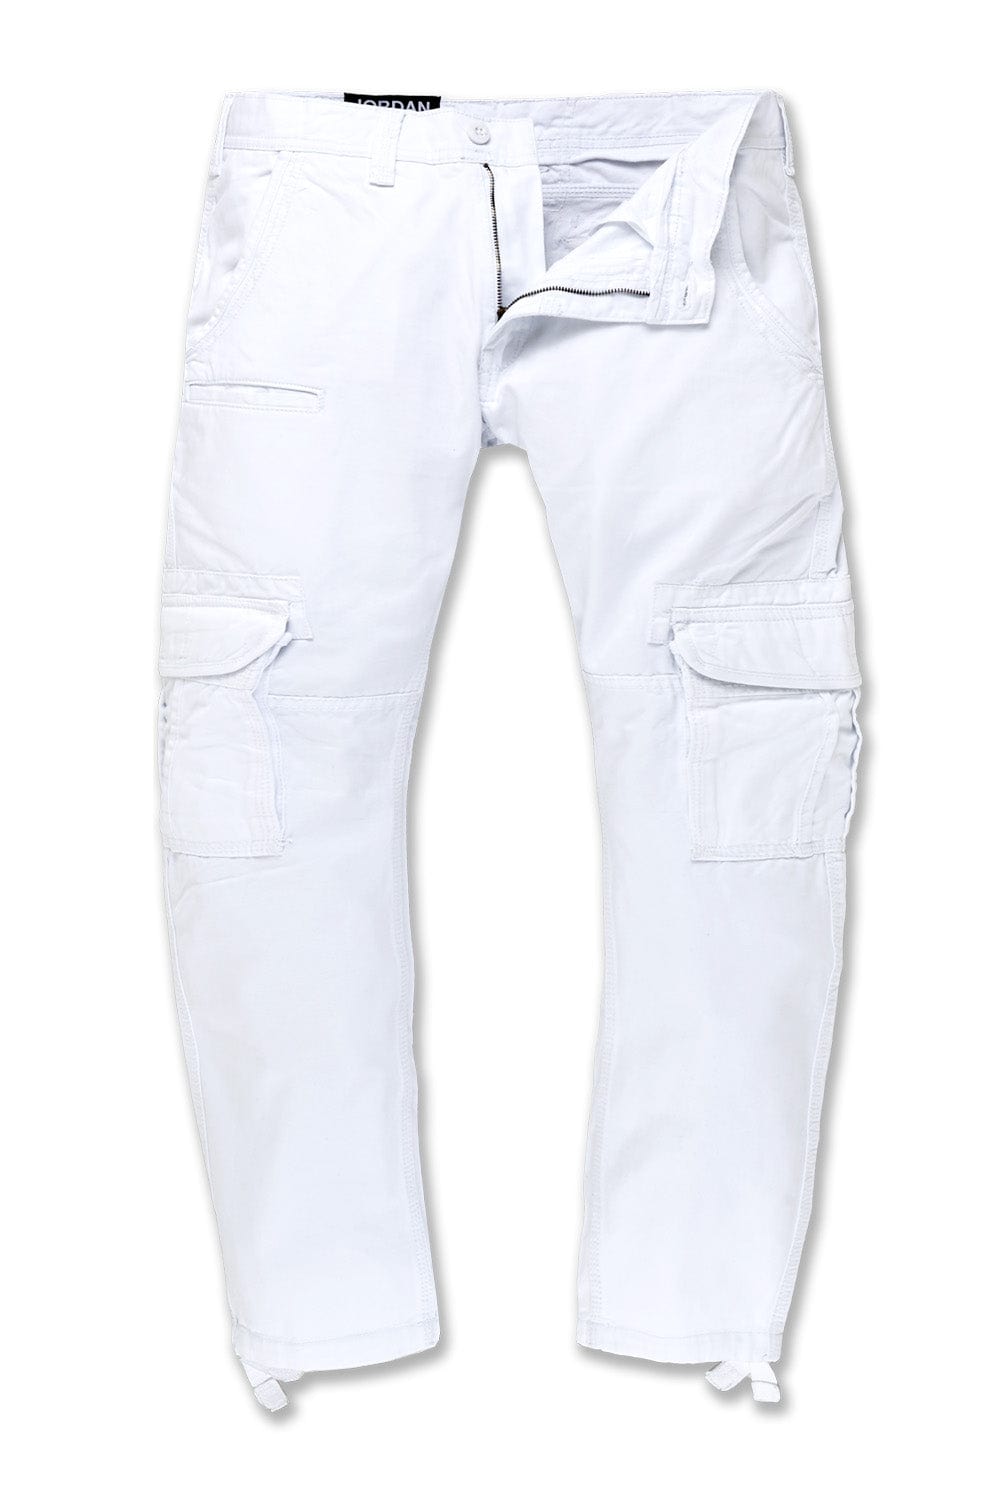 Jordan Craig Xavier - OG Cargo Pants (White) 30/32 / White